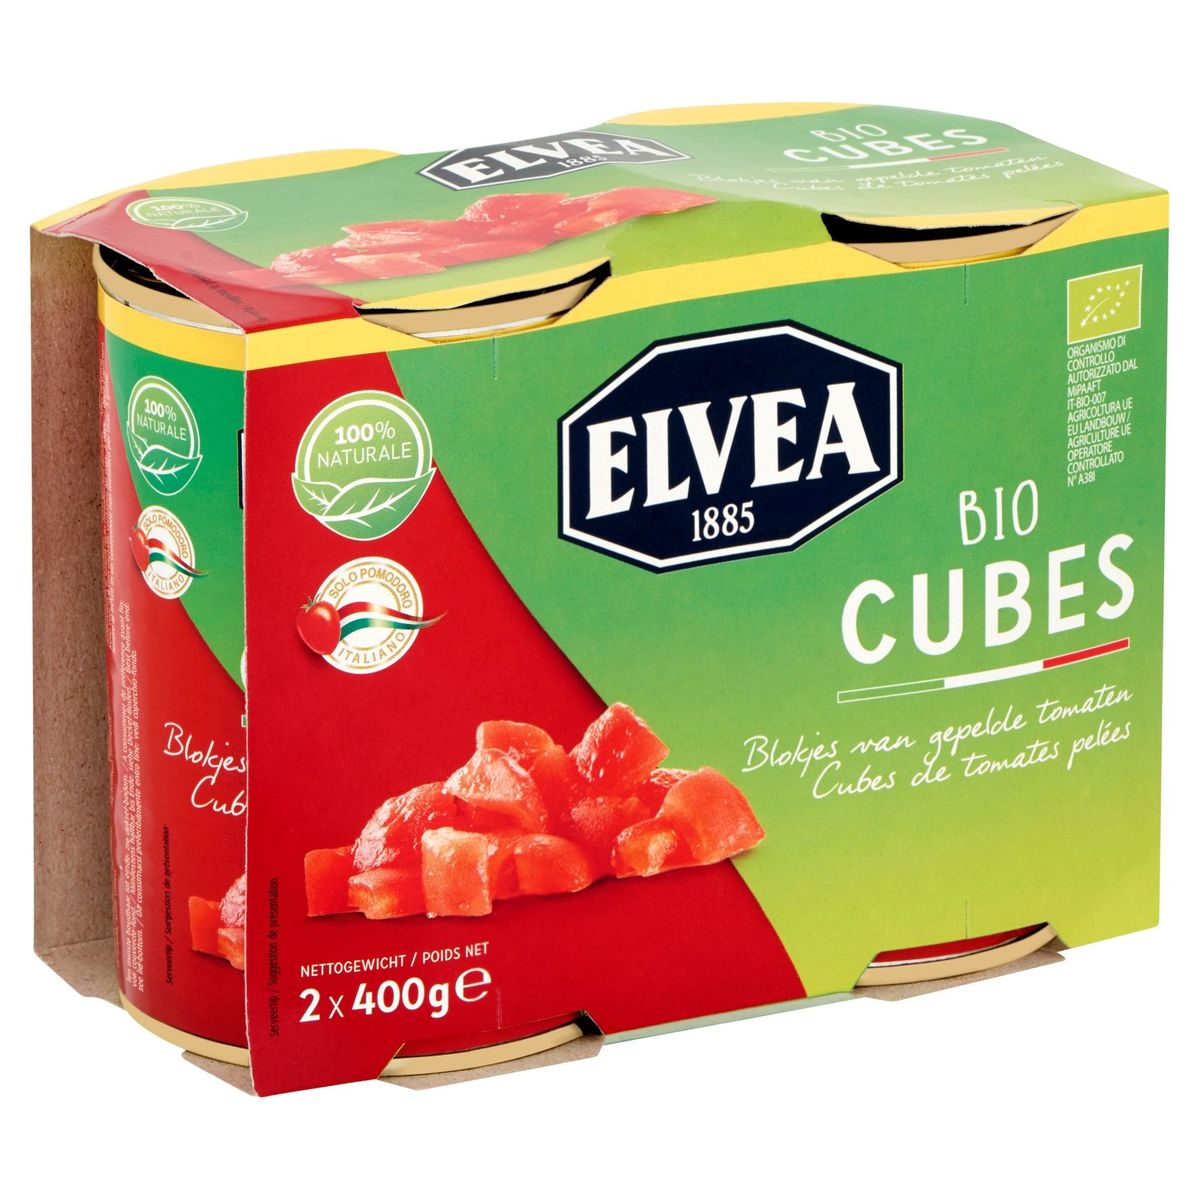 Elvea Bio Cubes Blokjes van Gepelde Tomaten 2 x 400 g